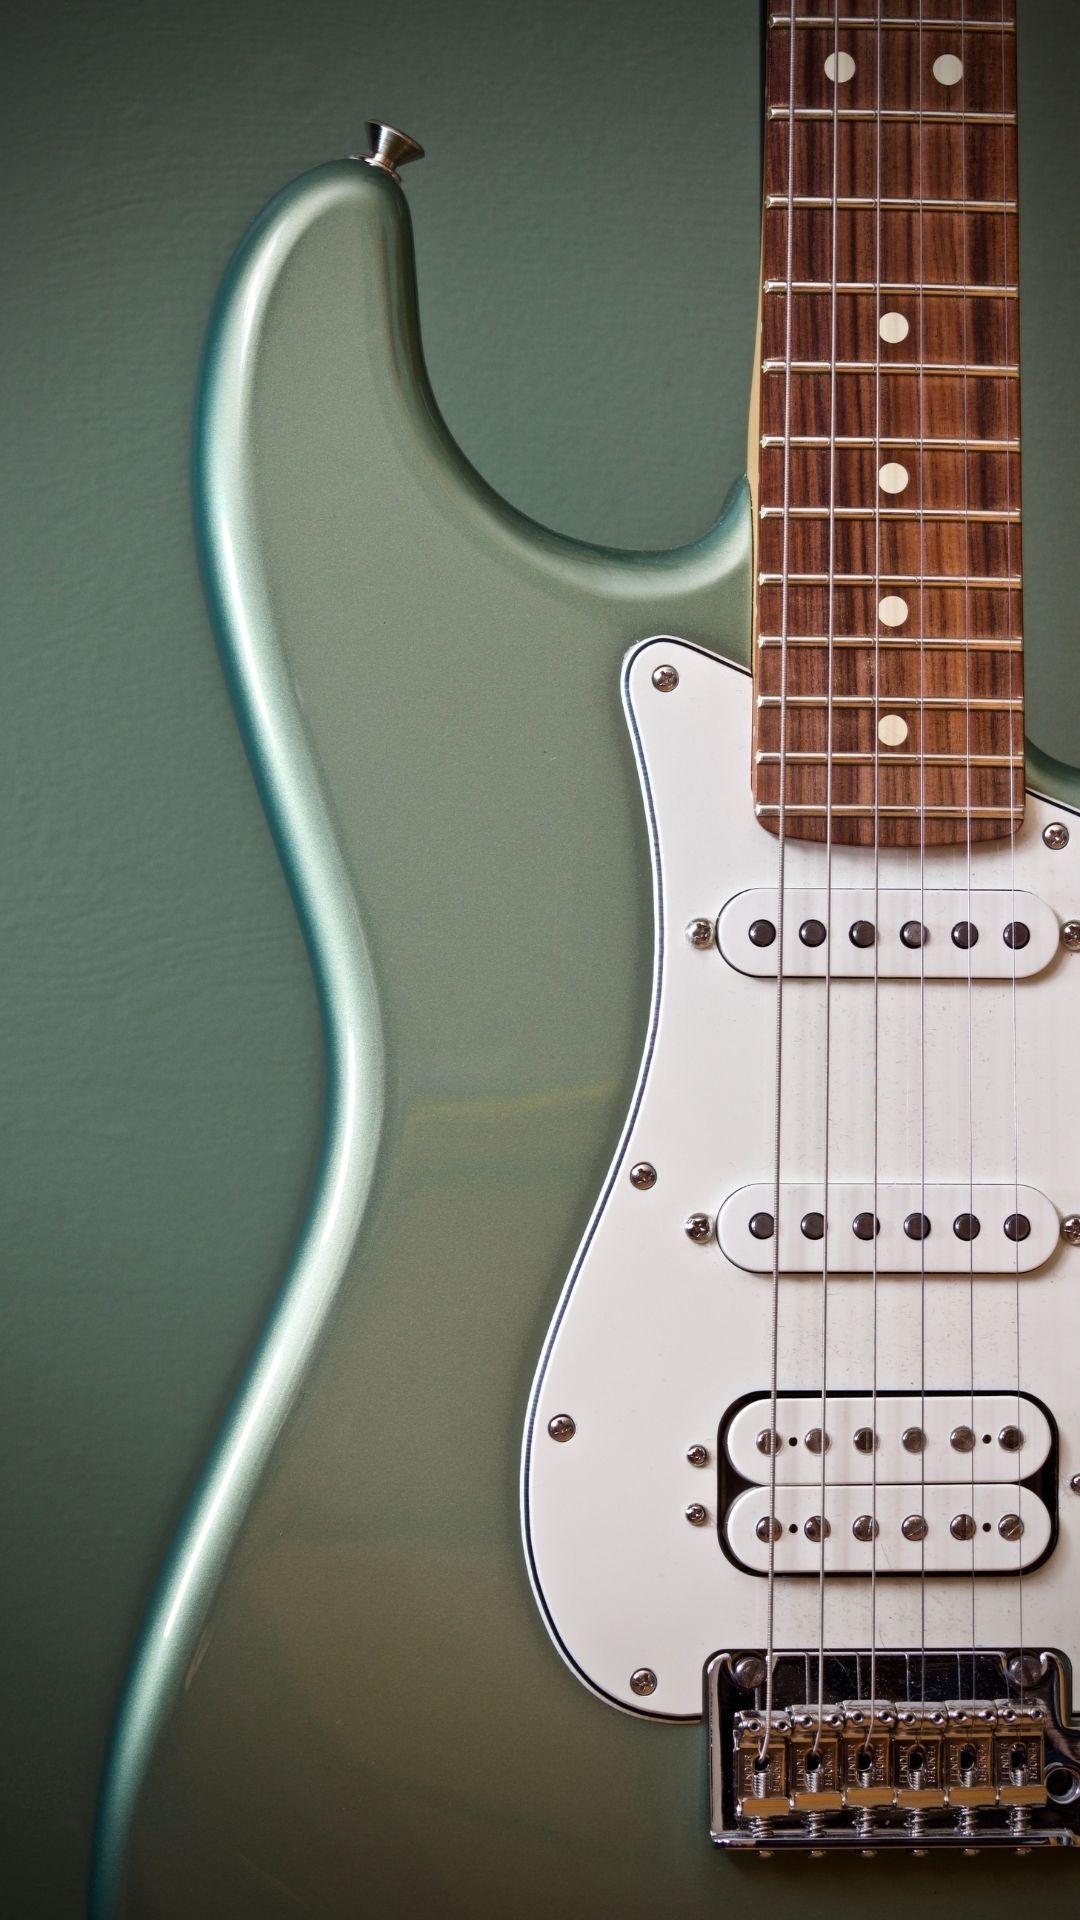 A close up of an electric guitar - Guitar